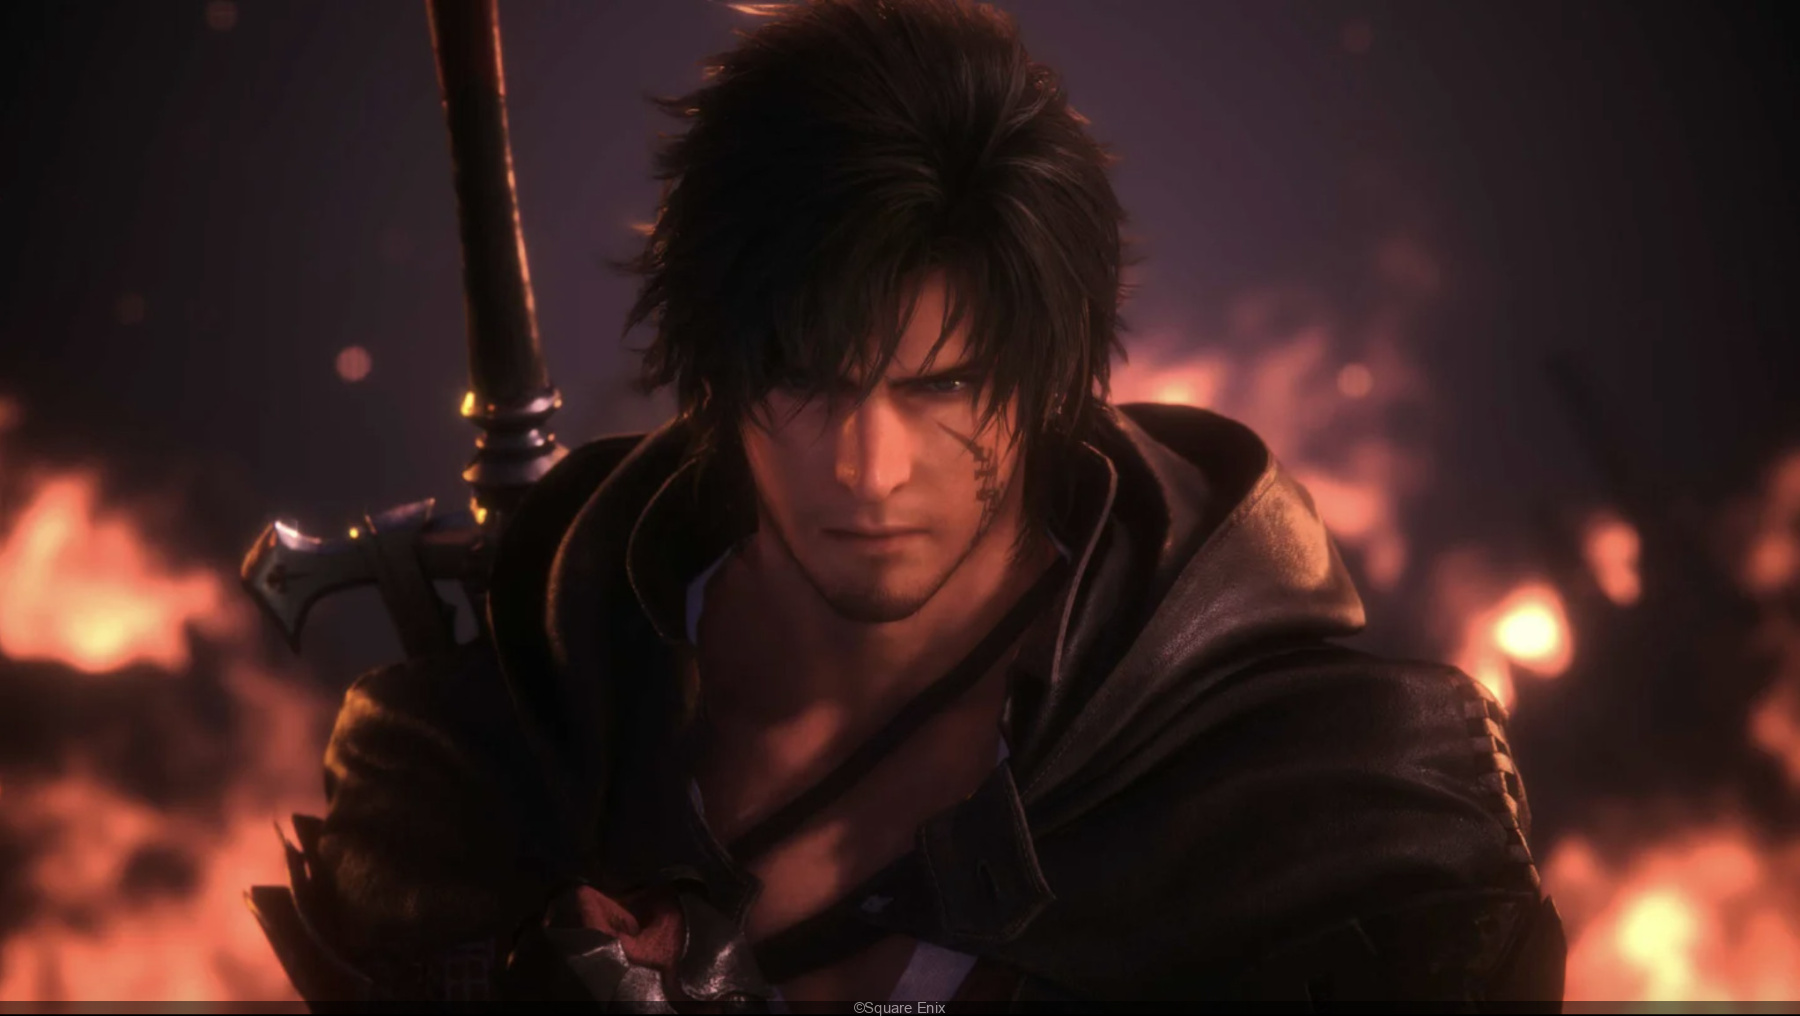 Final Fantasy 16 sắp sửa lên PC và sẽ có bản demo trước khi phát hành